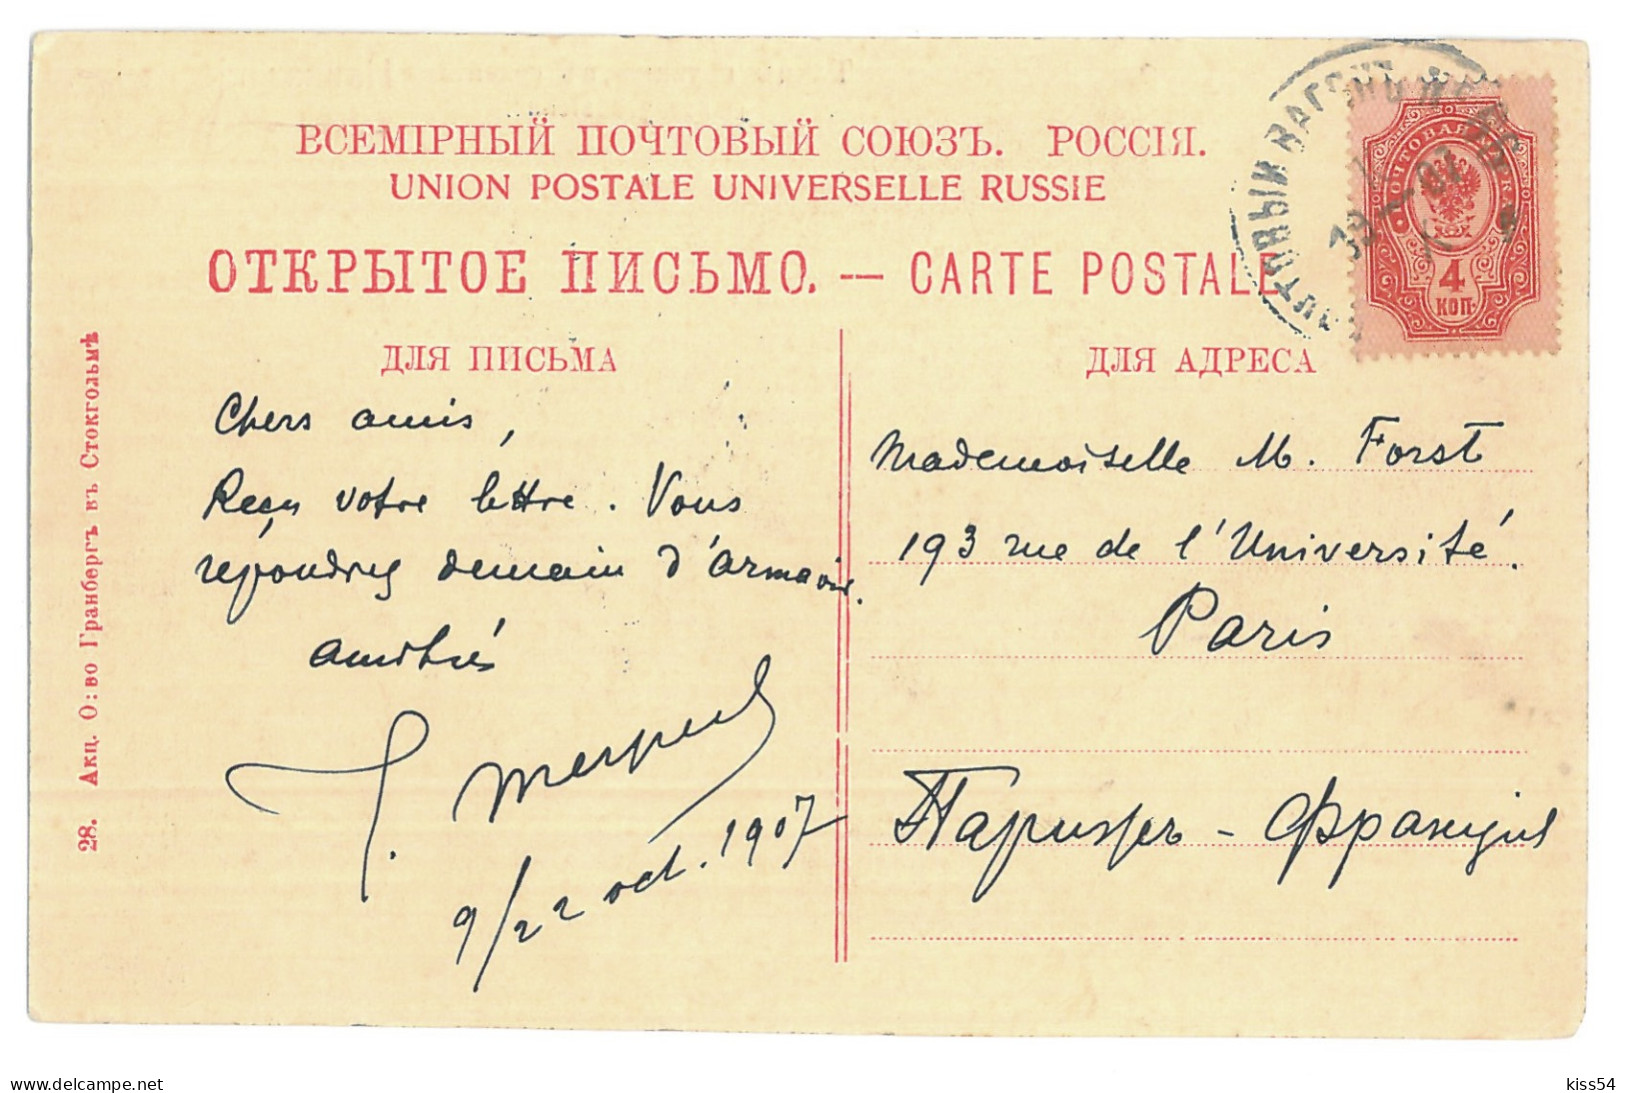 RUS 998 - 15453 ETHNICS Georgians In The Caucasus, Russia - Old Postcard - Used - 1907 - Russia